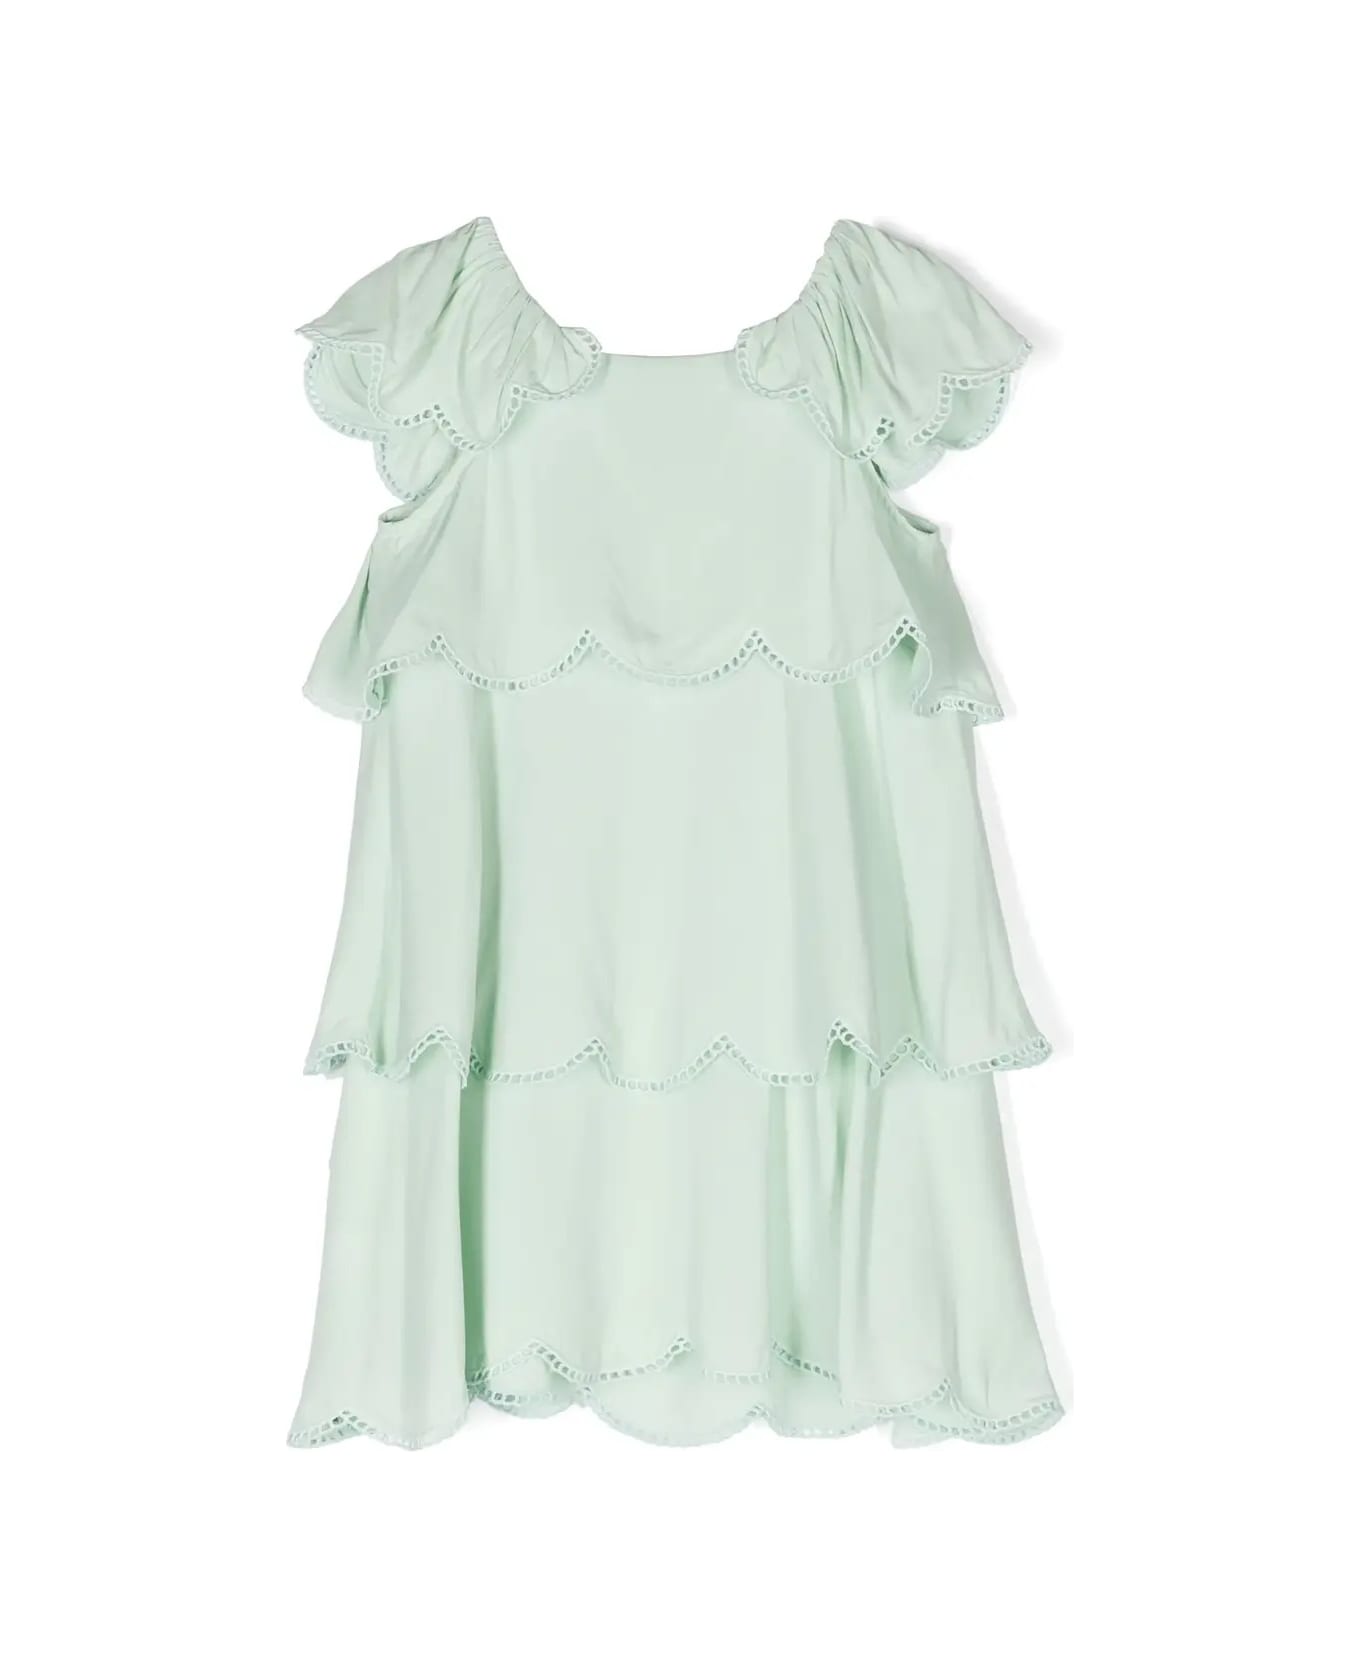 Stella McCartney Kids Green Ruffle Dress With Scalloped Hem - Green